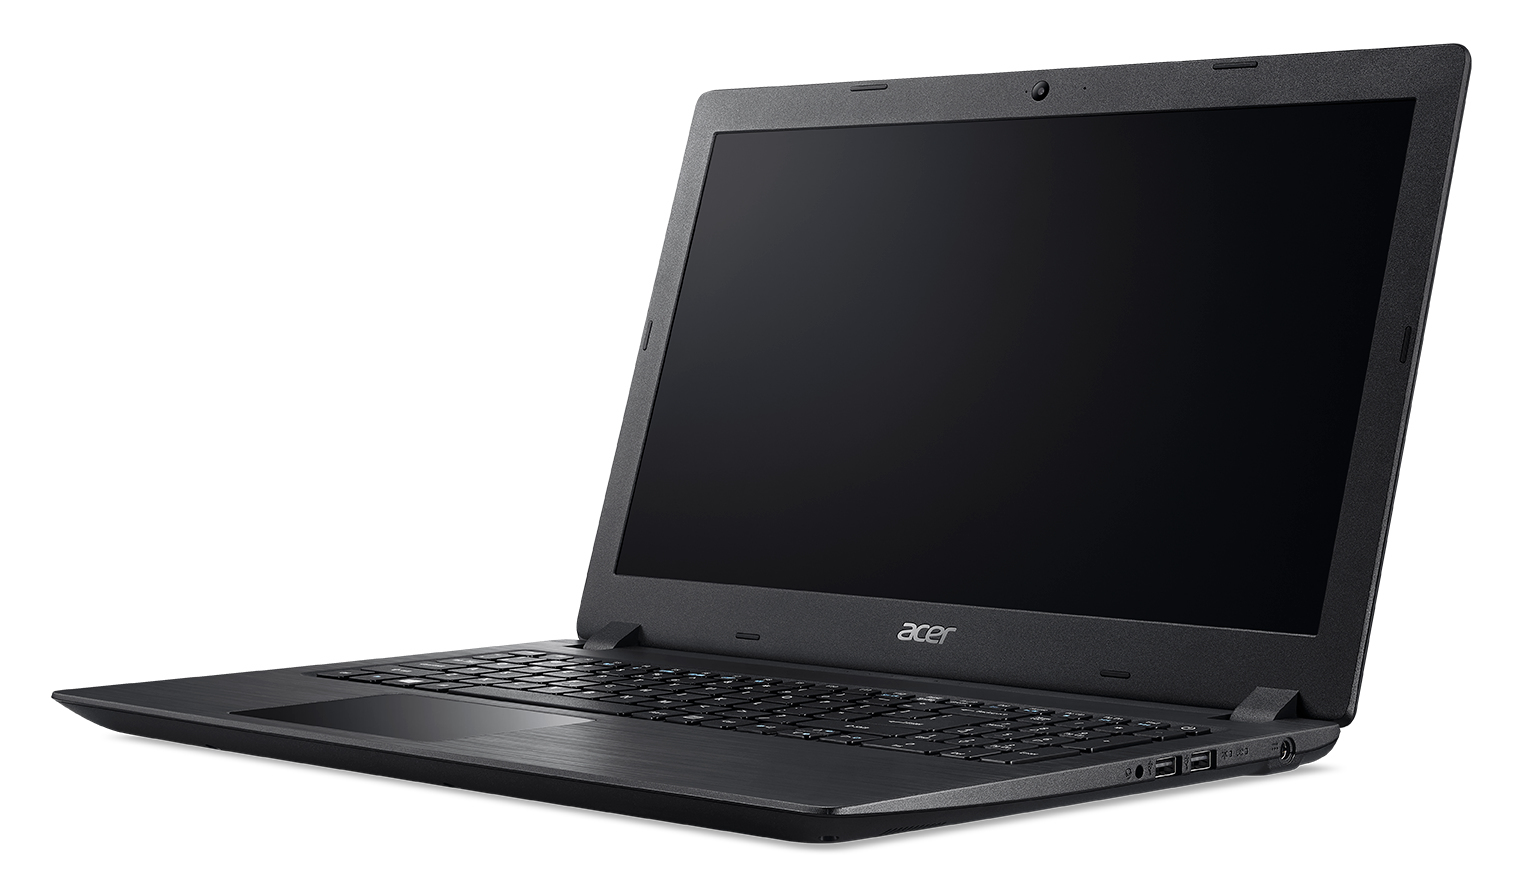 Laptop Acer A315-51-50P9 Core I5 7200 4G 1T 15.6" W10 "Mochila Gratis"